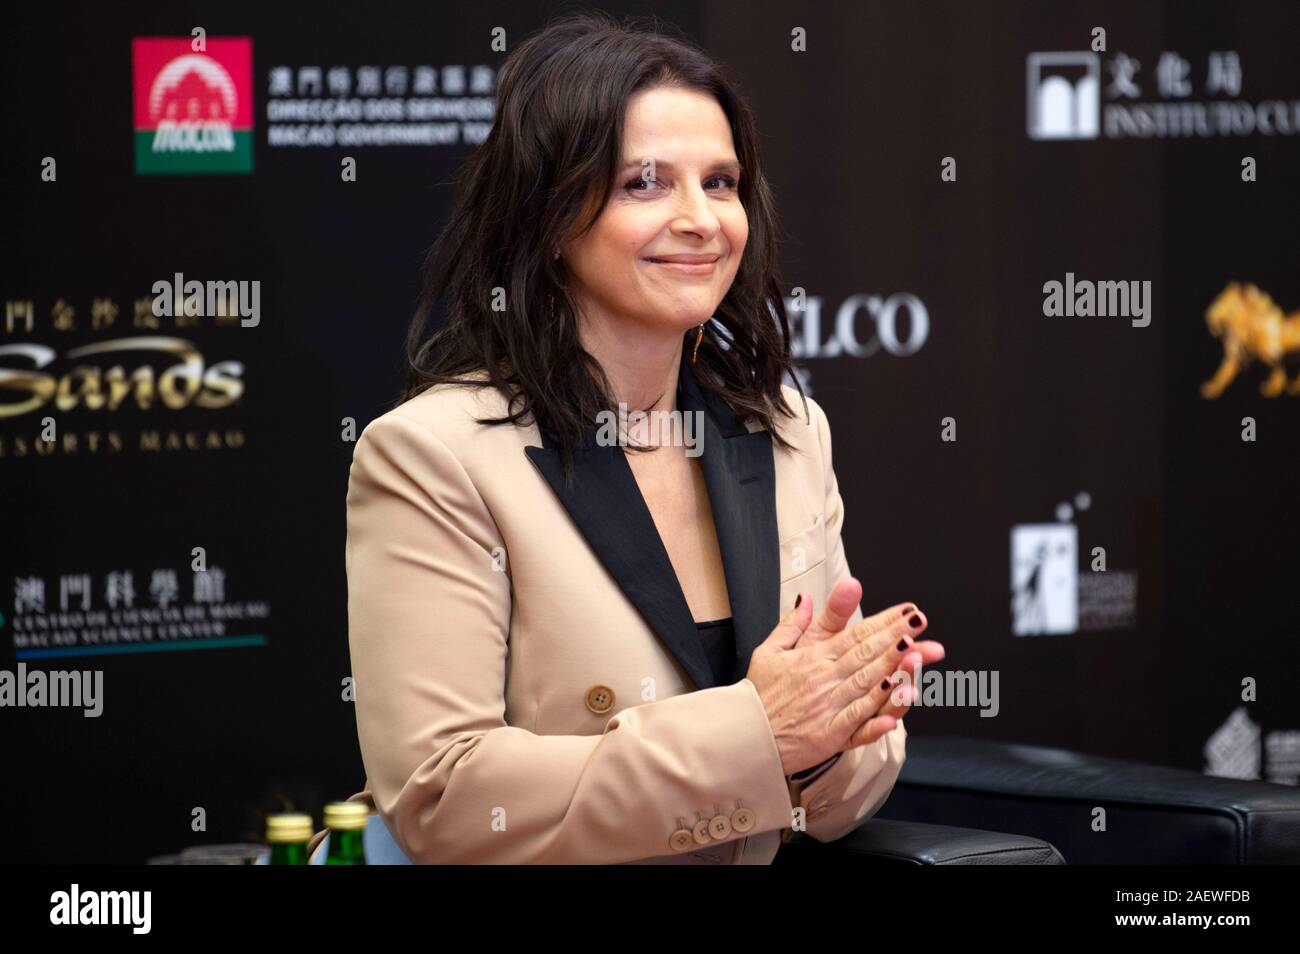 Juliette Binoche dans le cadre d'un groupe de discussion lors de la 4e International Film Festival et Prix à Macao Macao le centre culturel. Macao, l'utilisation dans le monde entier 09.12.2019 | Banque D'Images